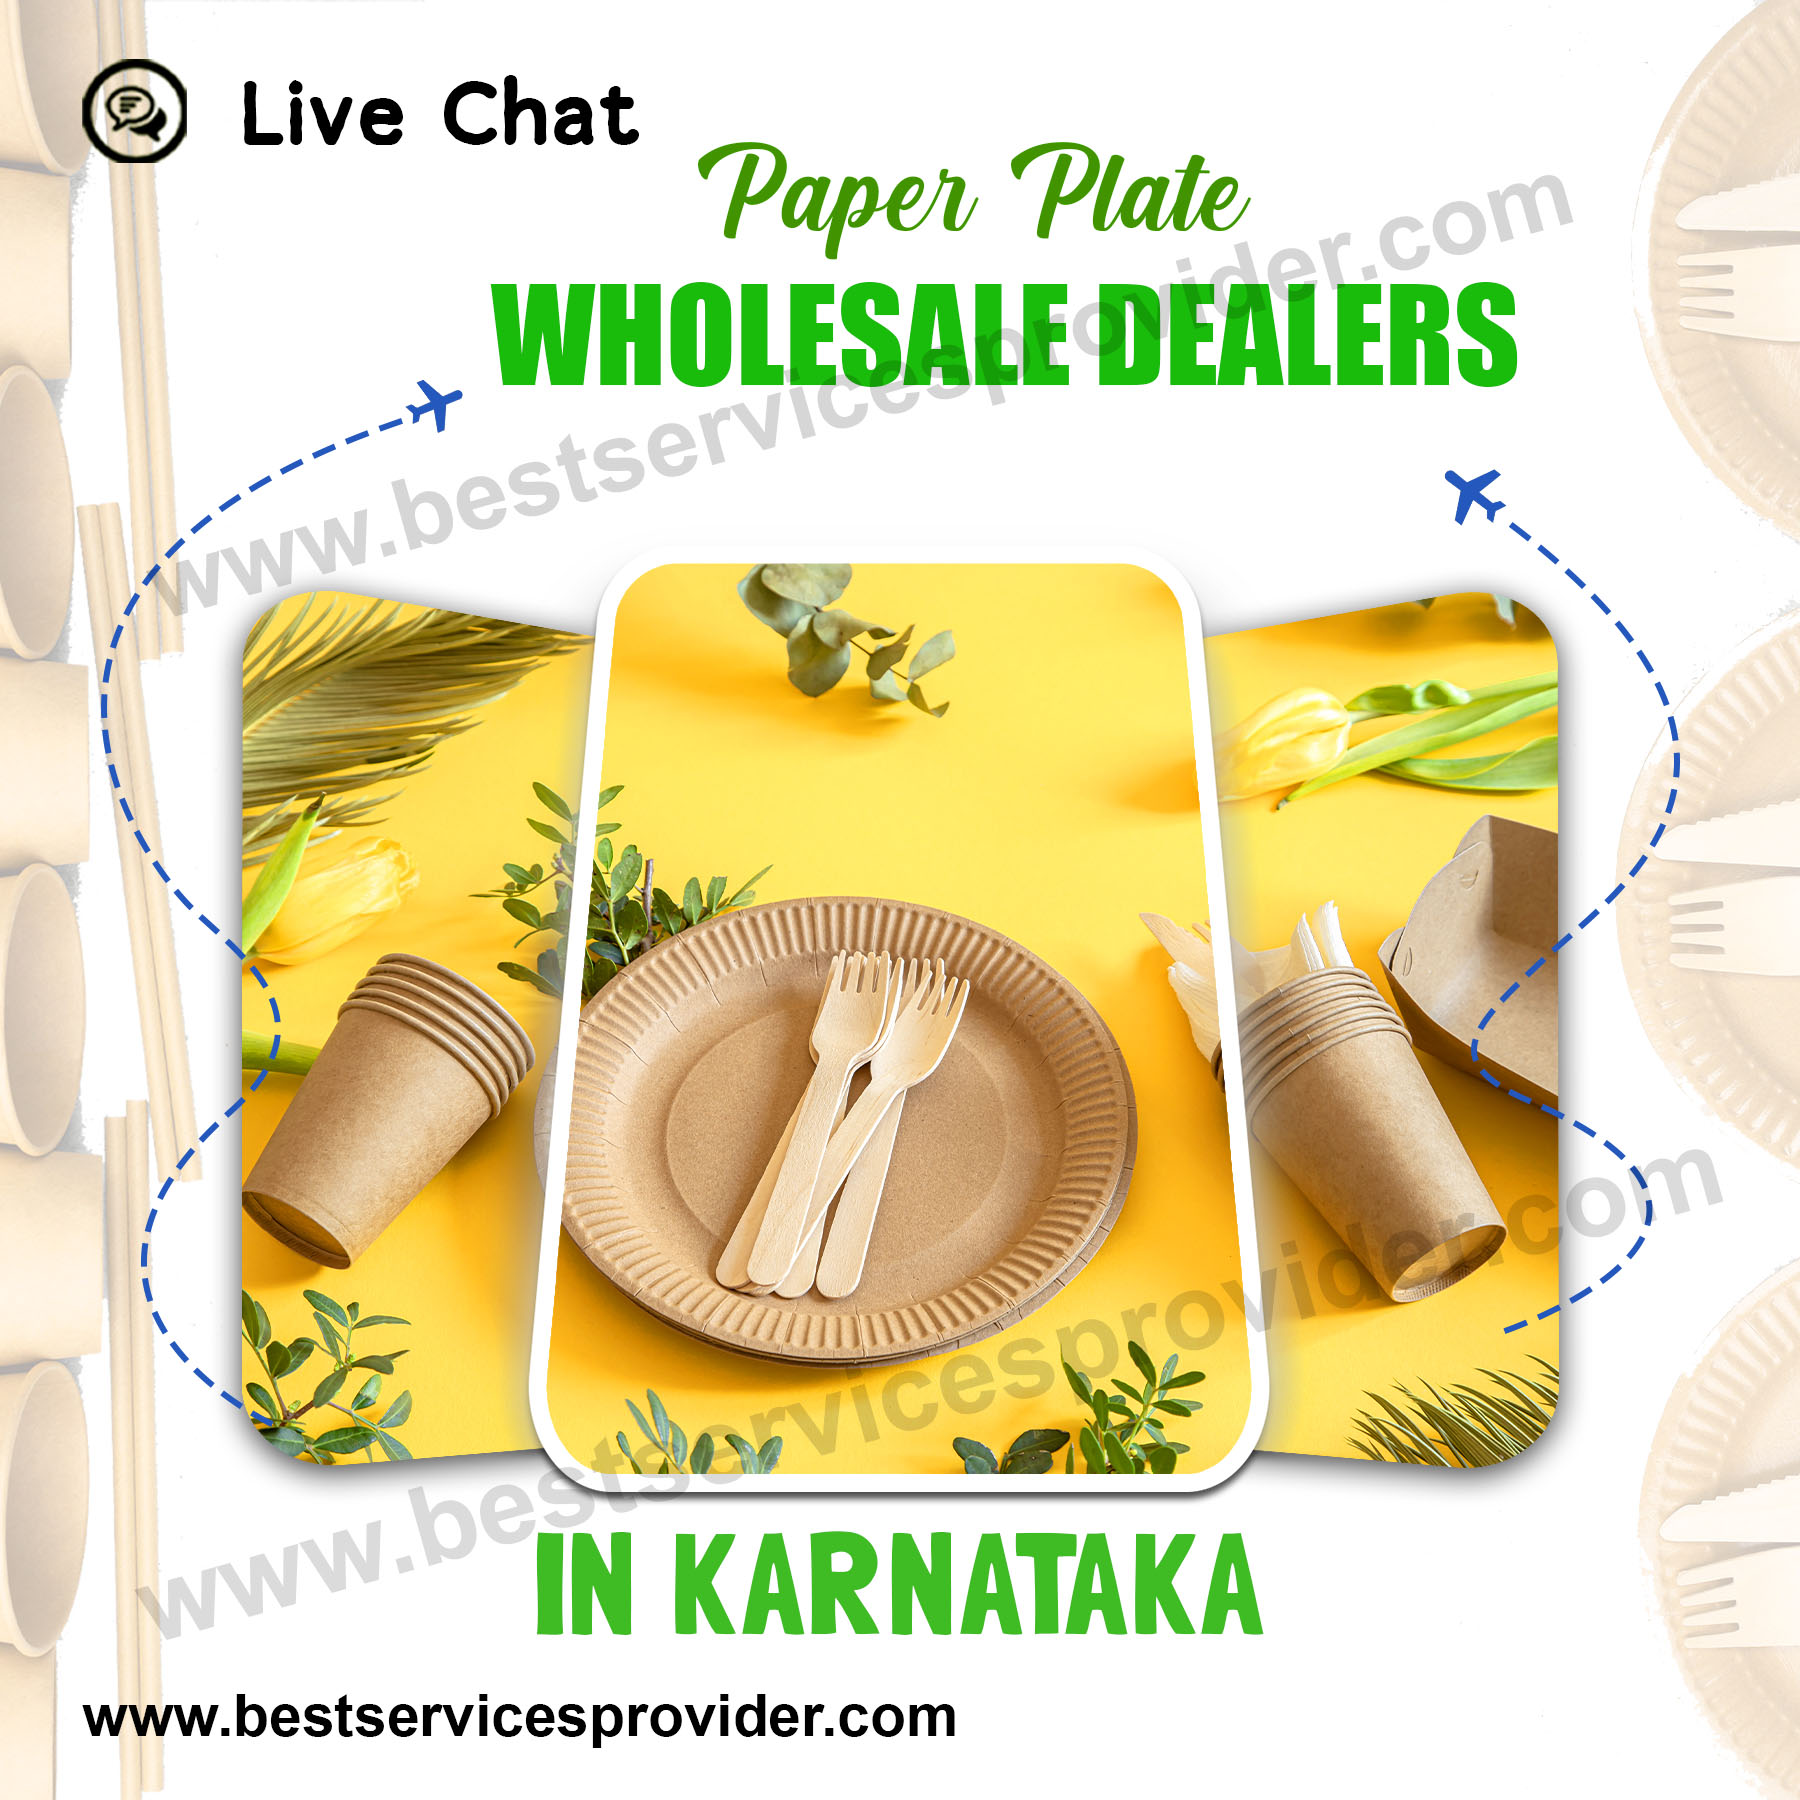 Paper Plate Wholesale Dealers In Karnataka